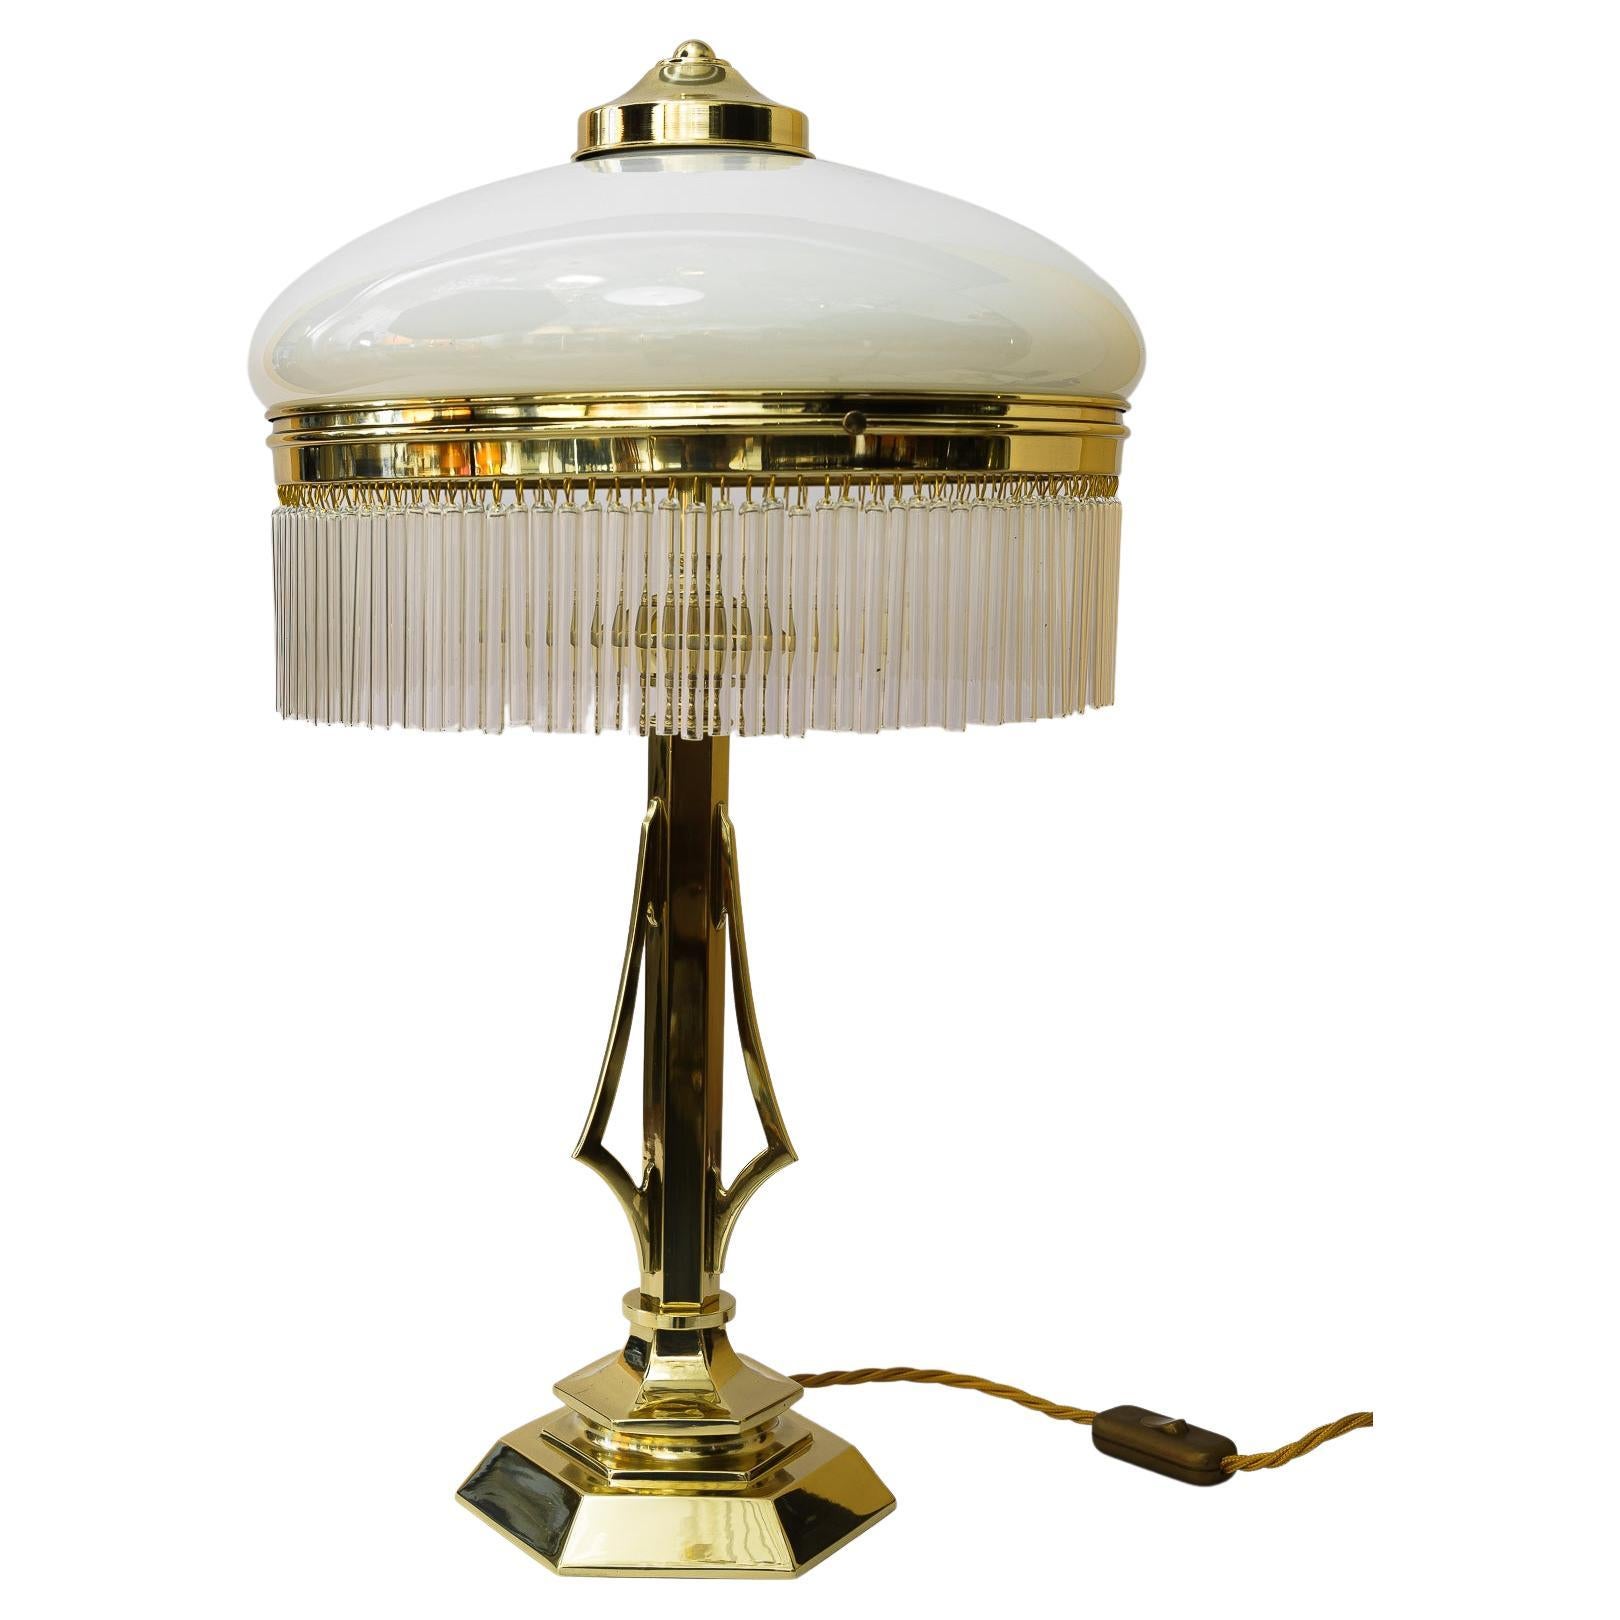 Art-Déco-Tischlampe Vienna aus den 1920er Jahren